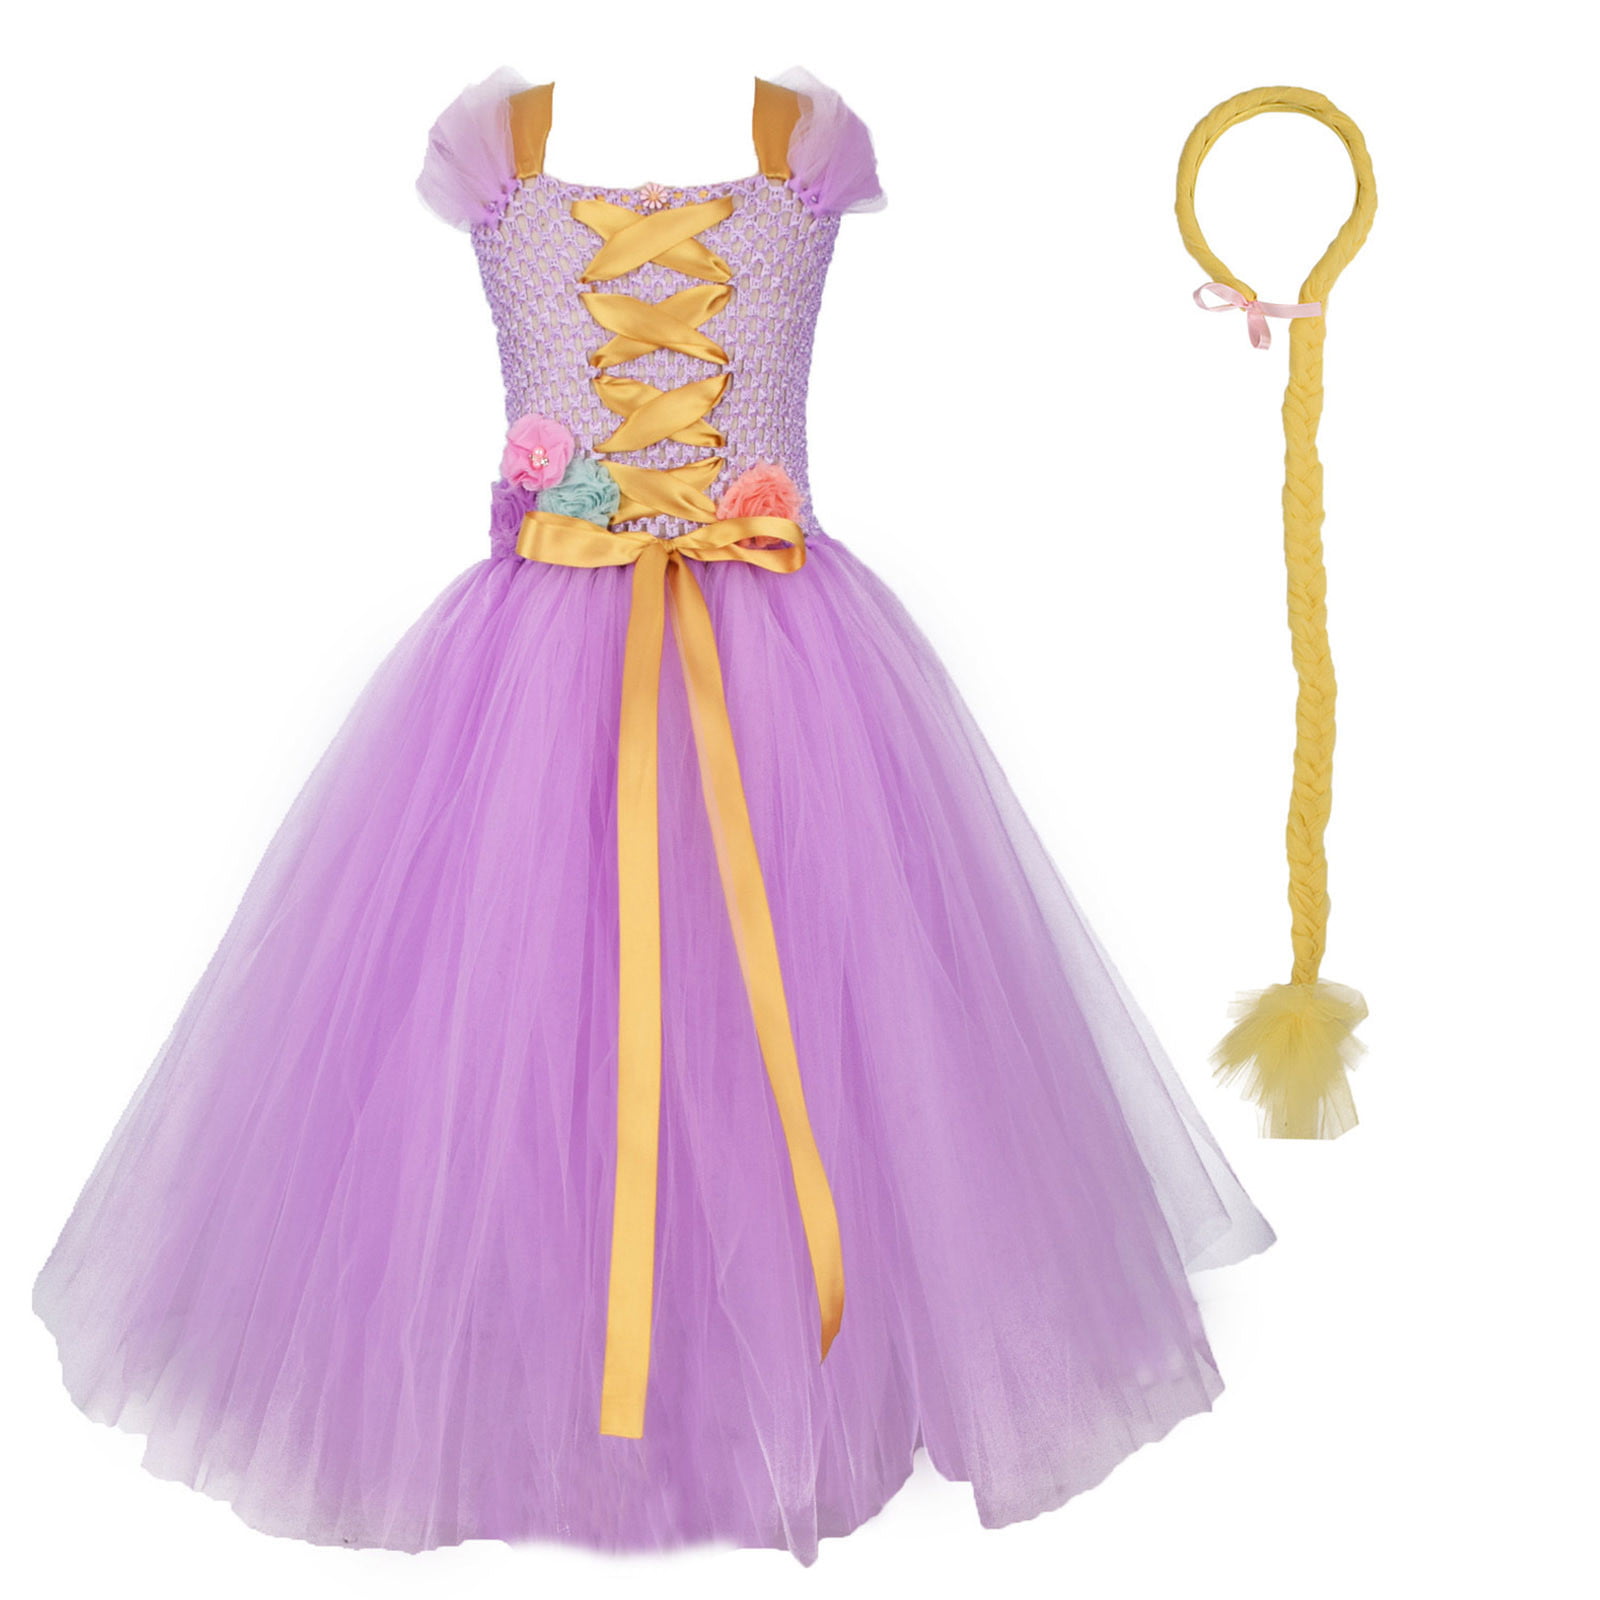 Gubotare Princess Dress Up Clothes For Little Girls Girls Dress Unicorn ...